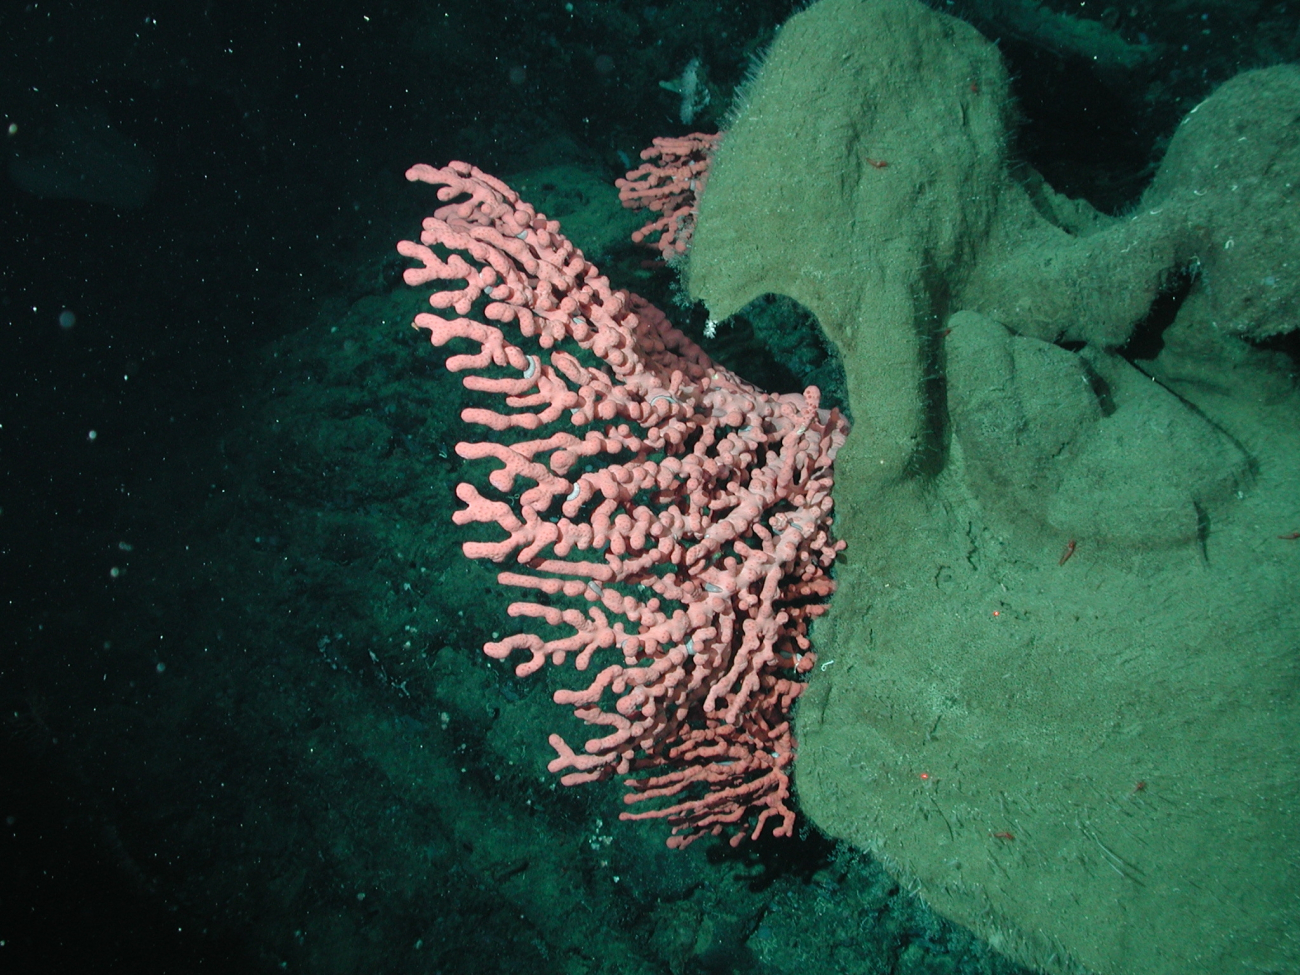 Bubblegum coral (Paragorgia arborea) growing next to a large sponge